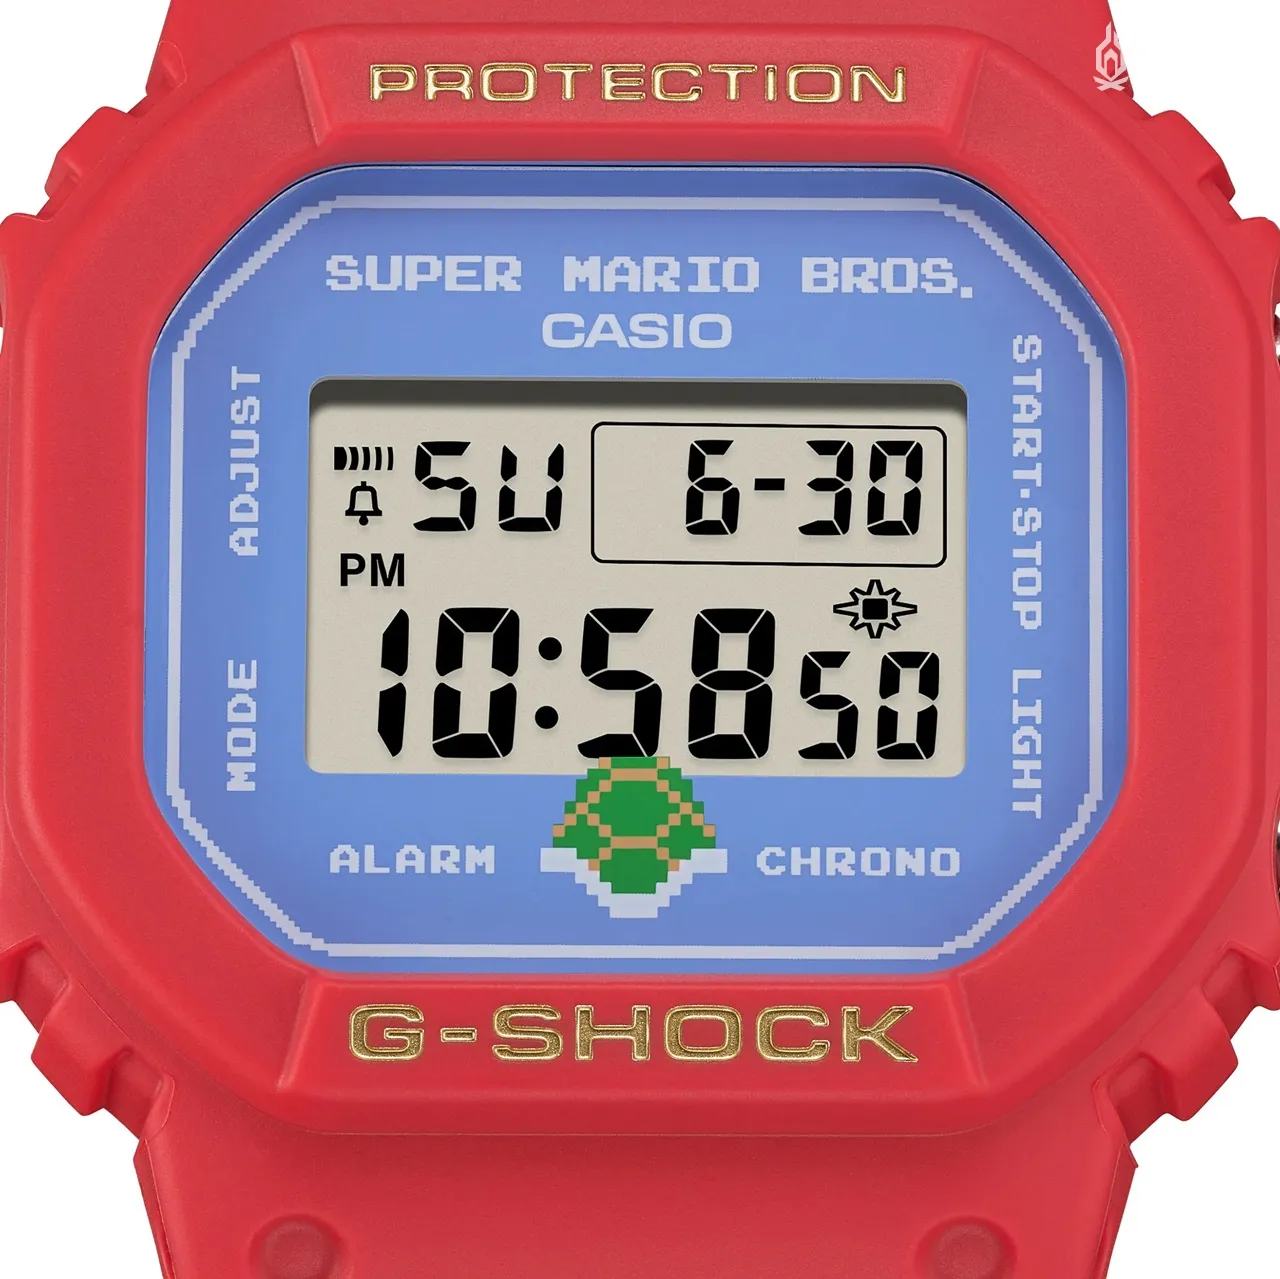 卡西歐「G-SHOCK」將推出《超級瑪利歐兄弟》合作款電子表